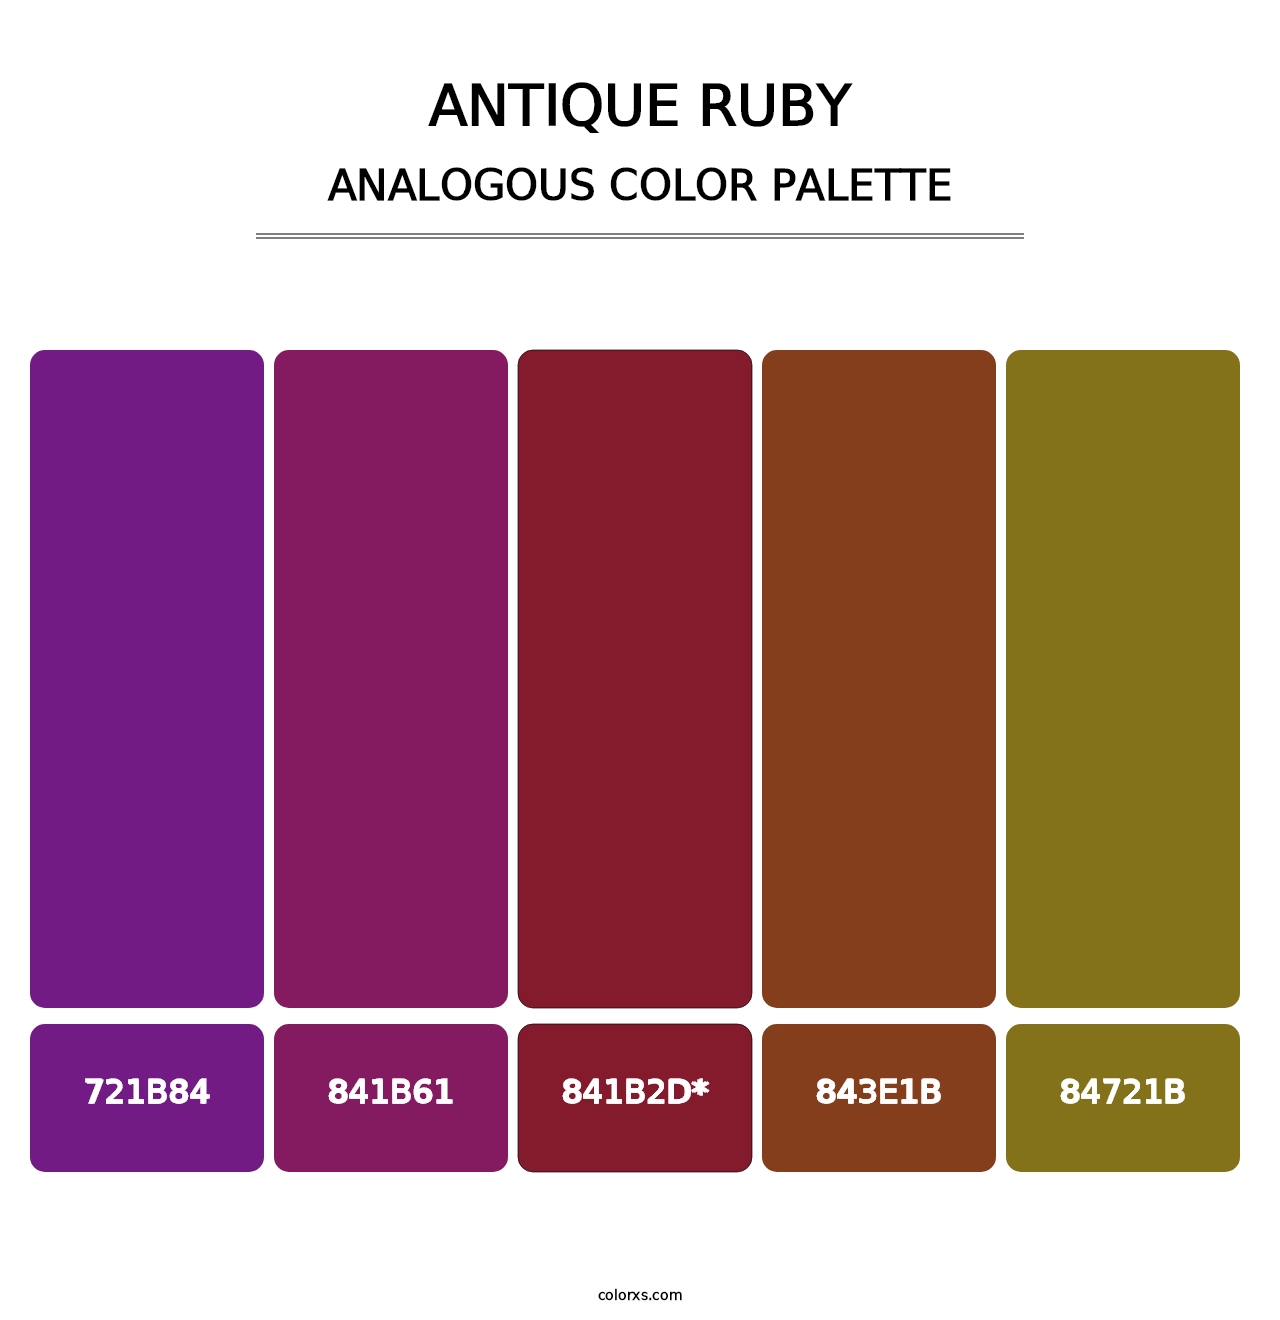 Antique Ruby - Analogous Color Palette